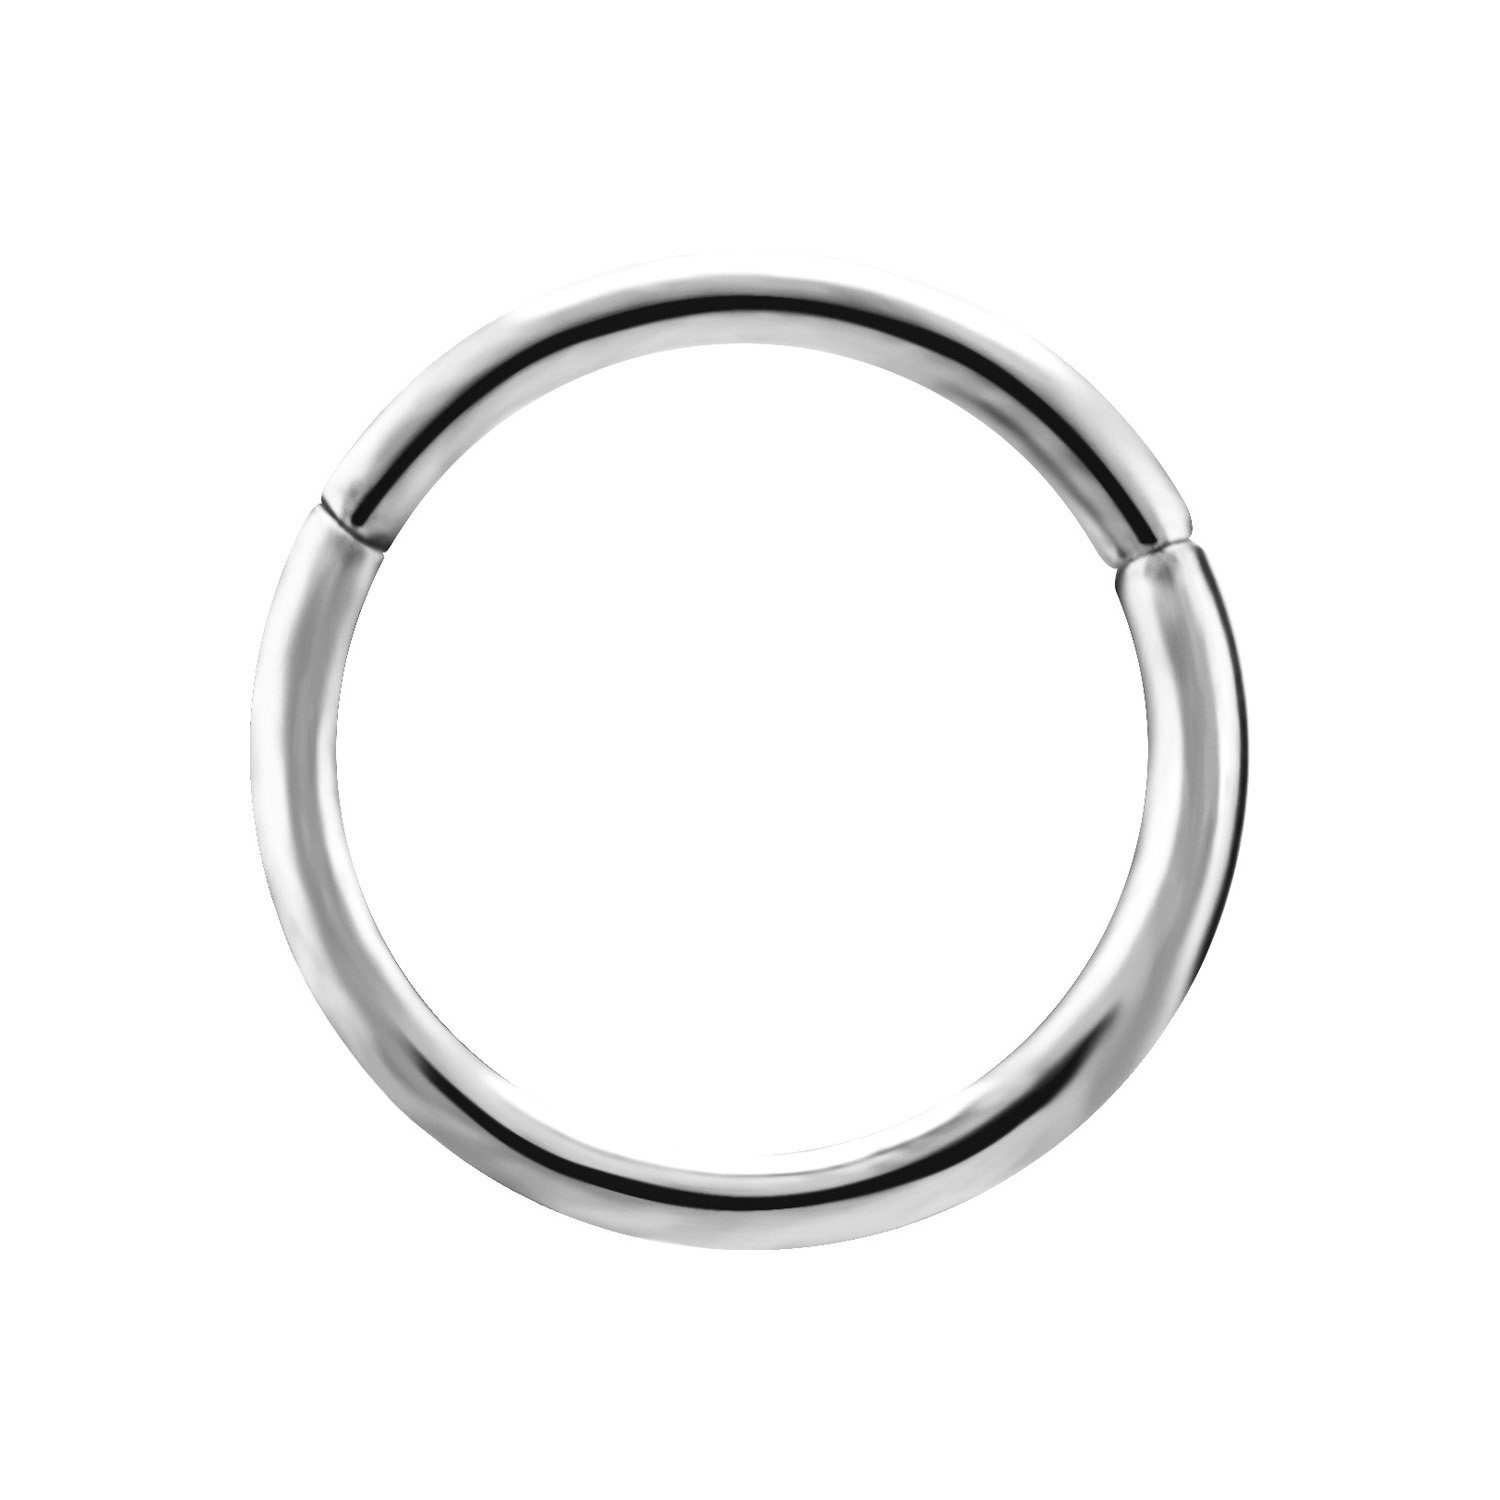 Karisma Nasenpiercing Edelstahl 316L Hinged Segmentring Charnier/Conch  Clicker Ring Piercing Ohrring Stärke 1,2mm - 8mm Durchmesser, Silber